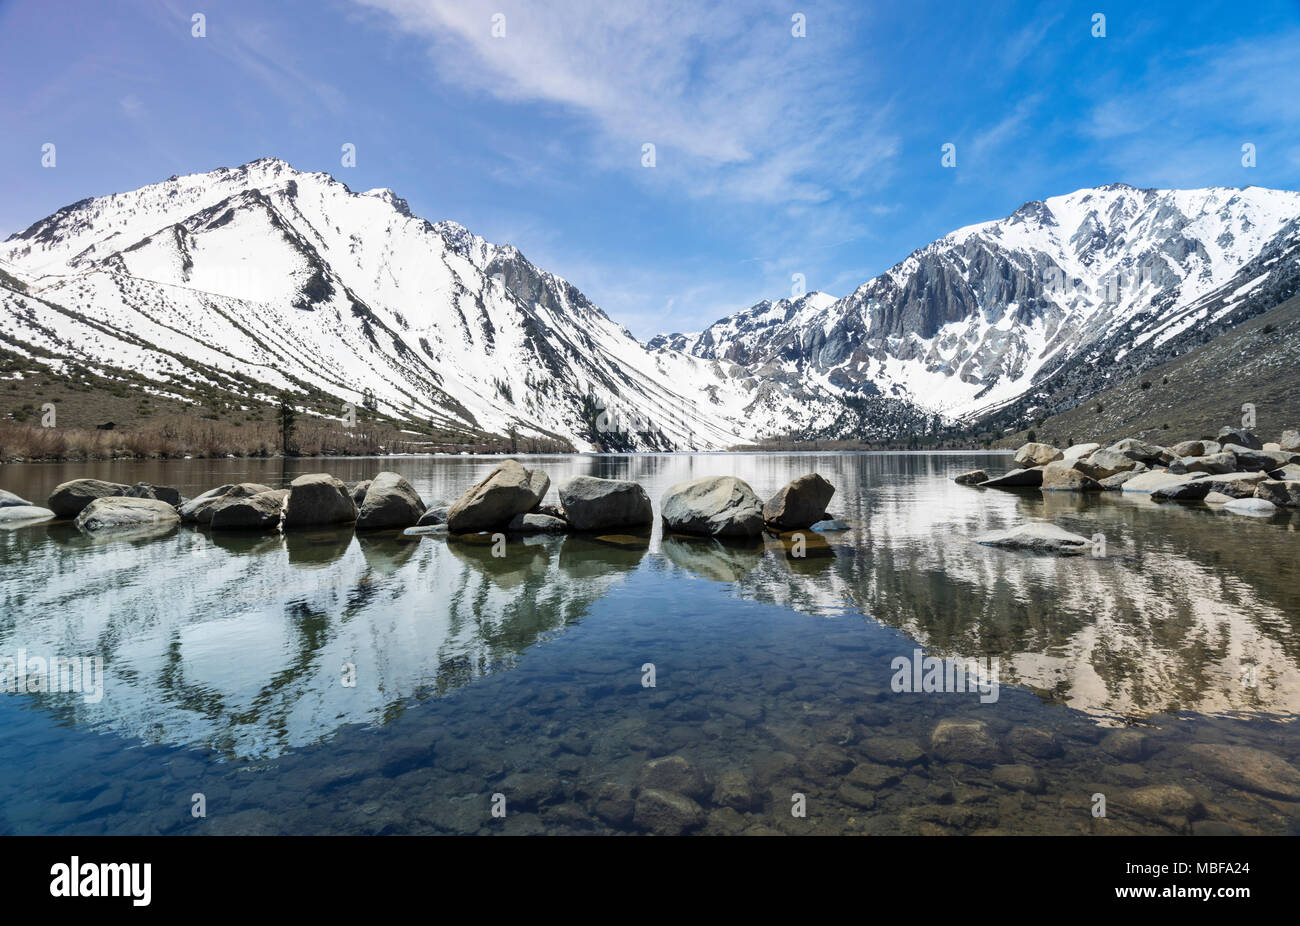 Reflet des montagnes couvertes de neige dans un lac calme condamné à la Sierra Nevada en Californie, USA Banque D'Images